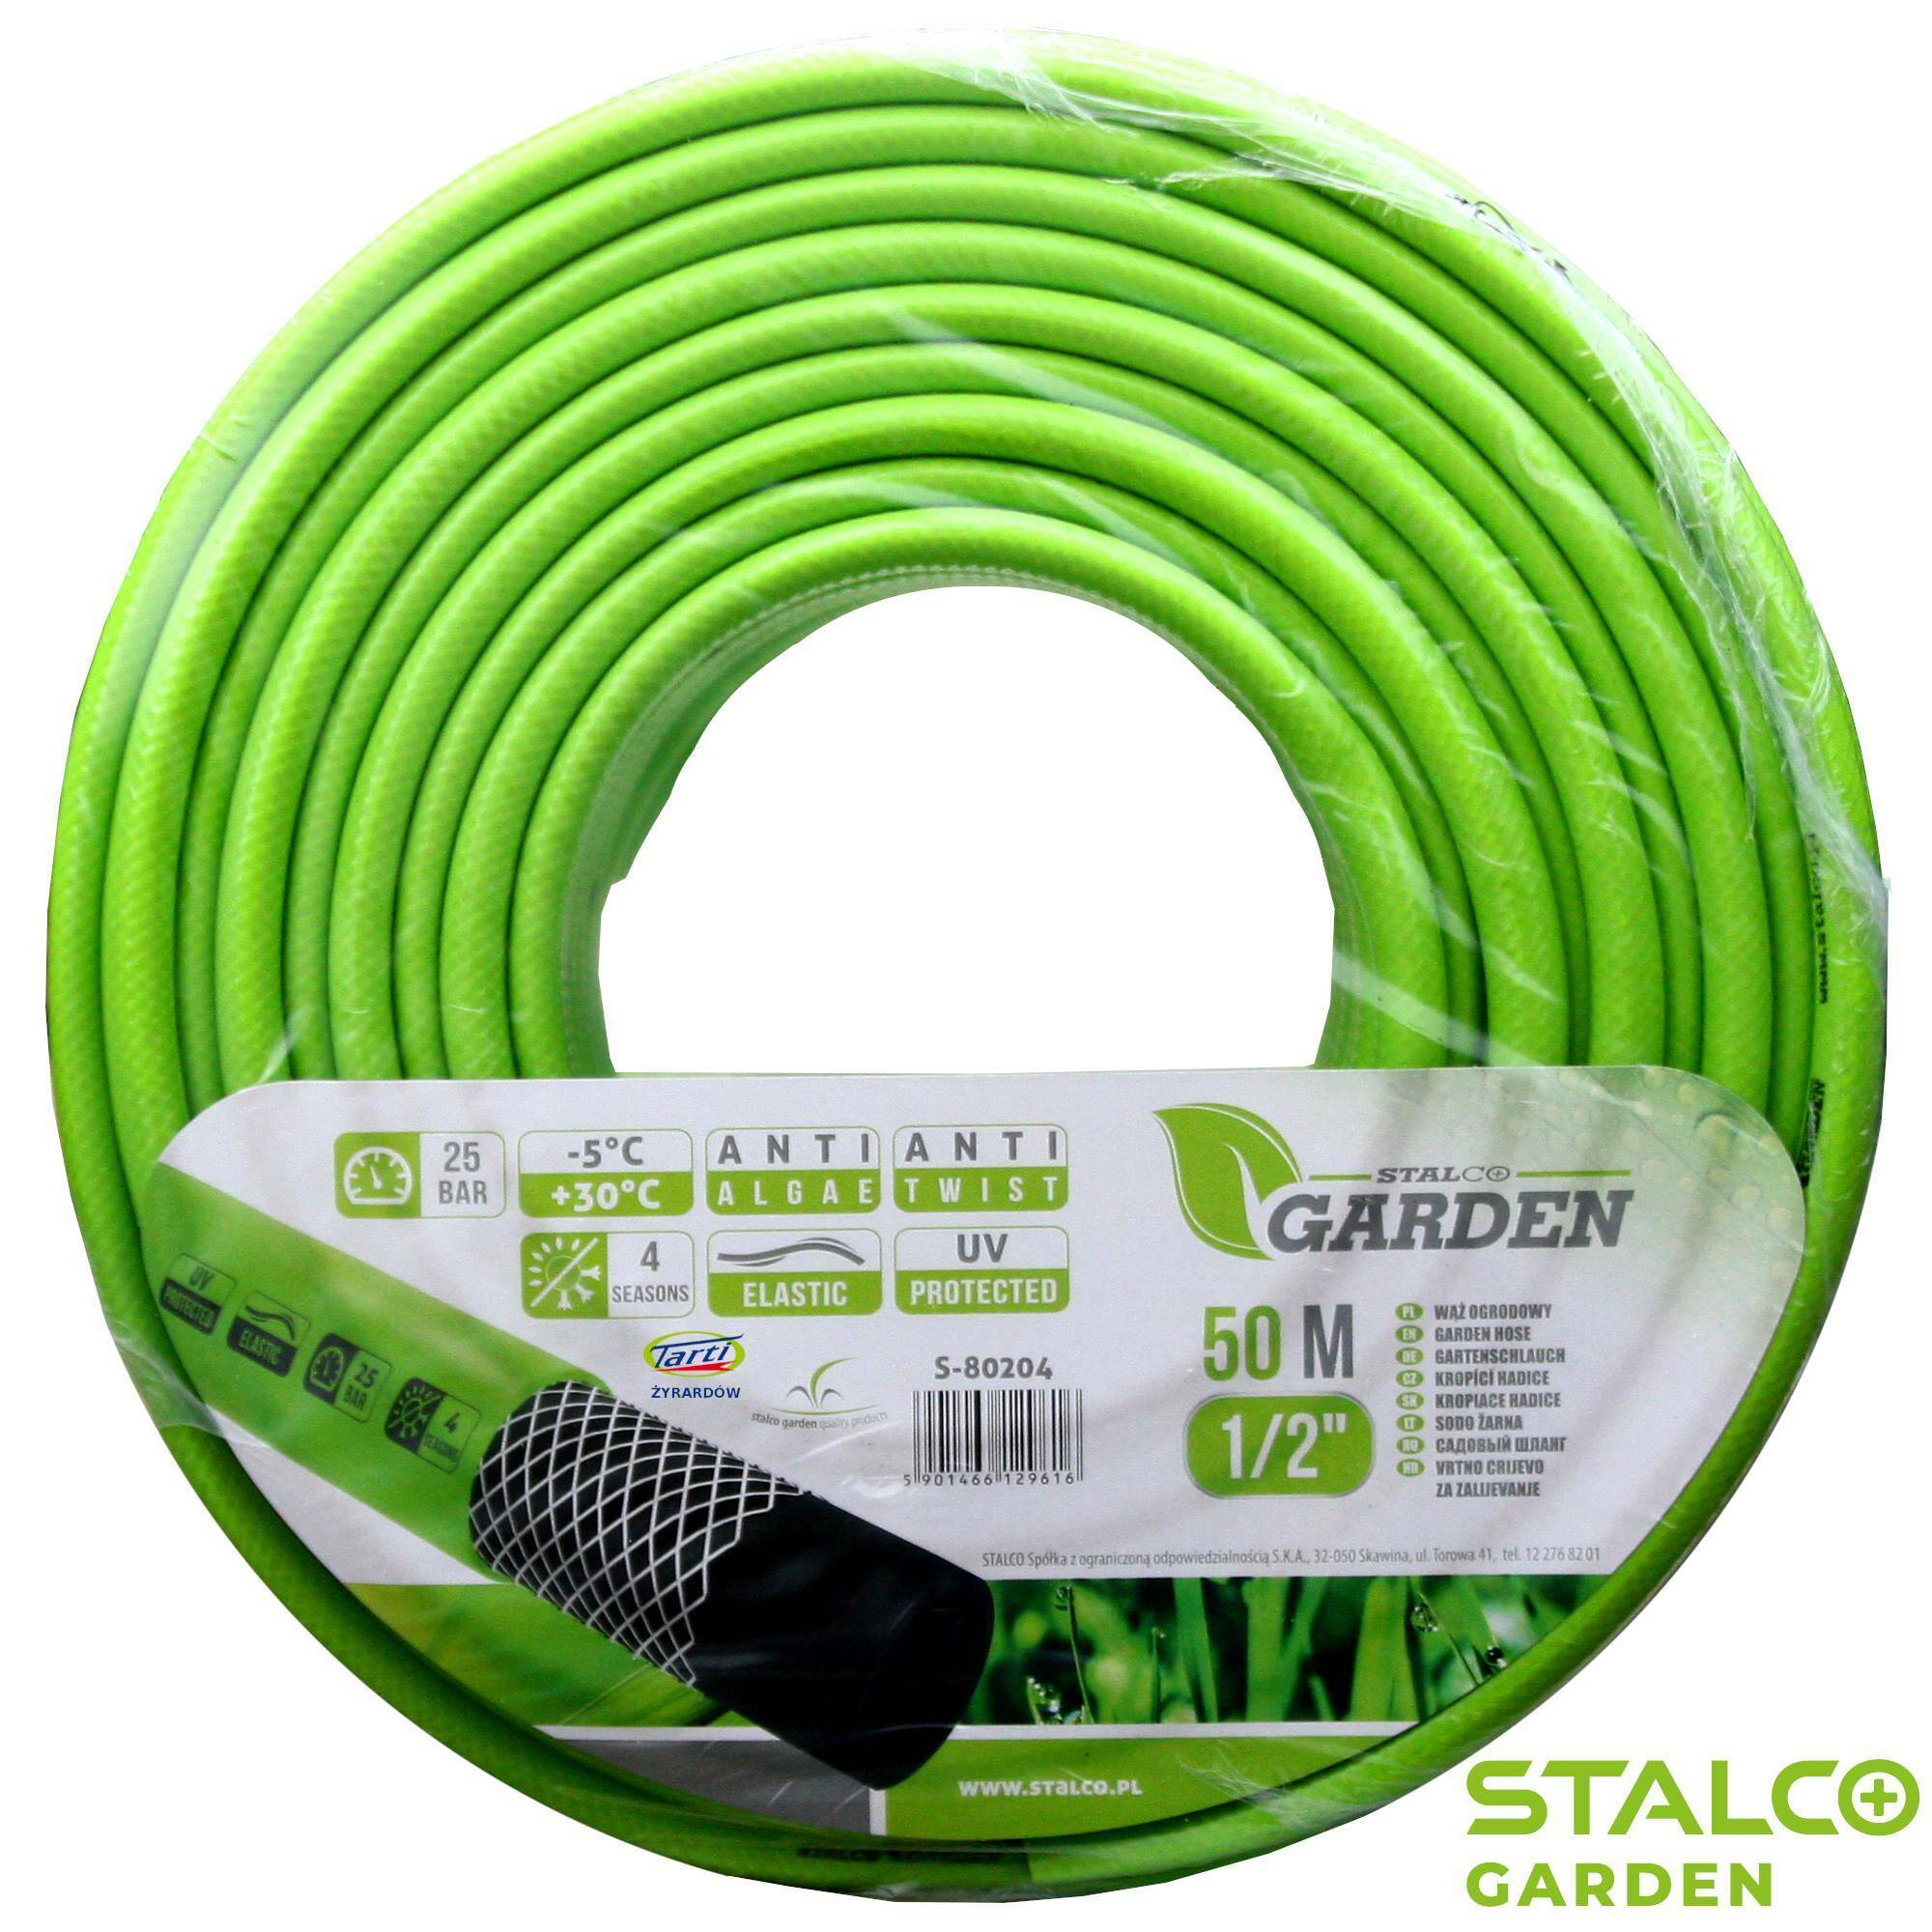 STALCO GARDEN s-80204 wąż ogrodowy 1/2